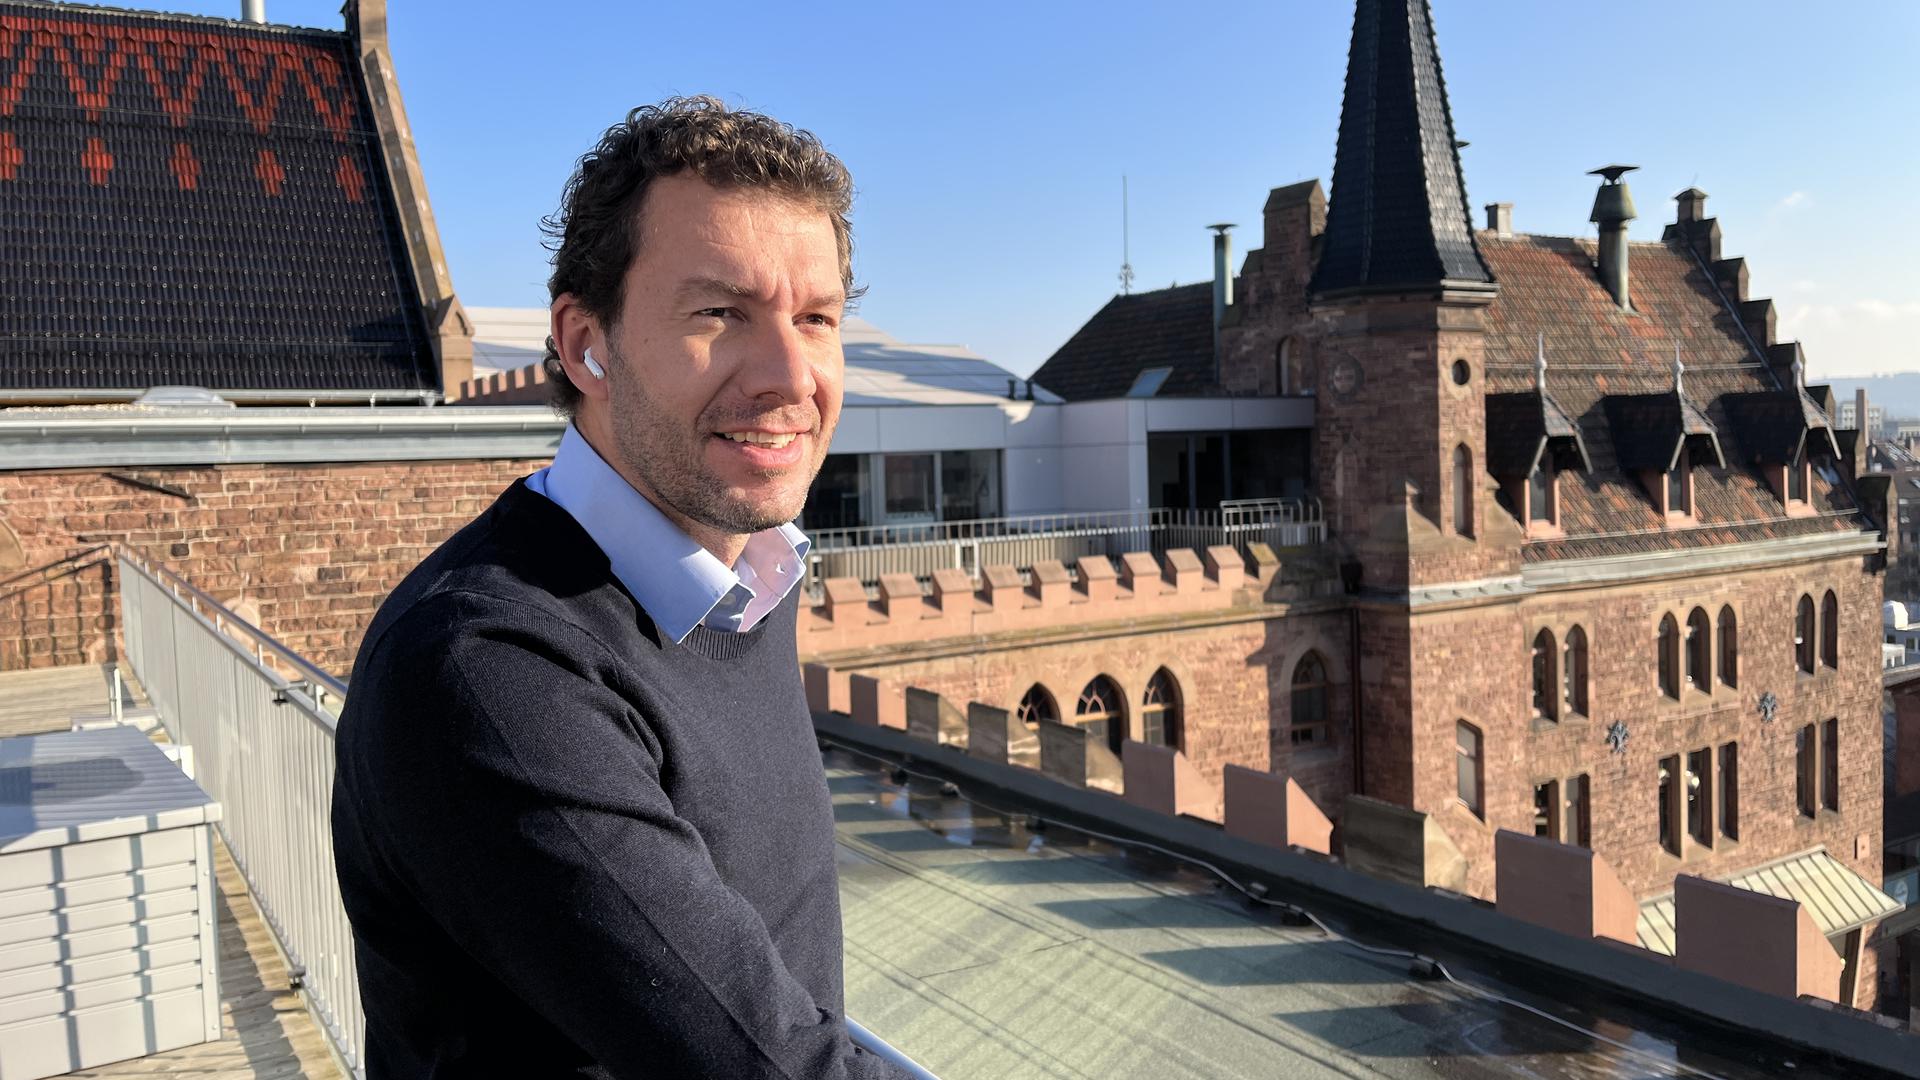 Über den Zinnen der Höpfner-Burg: Chrono24-Geschäftsführer Tim Stracke hat das Geschehen auf dem Markt für Luxusuhren weltweit im Blick.